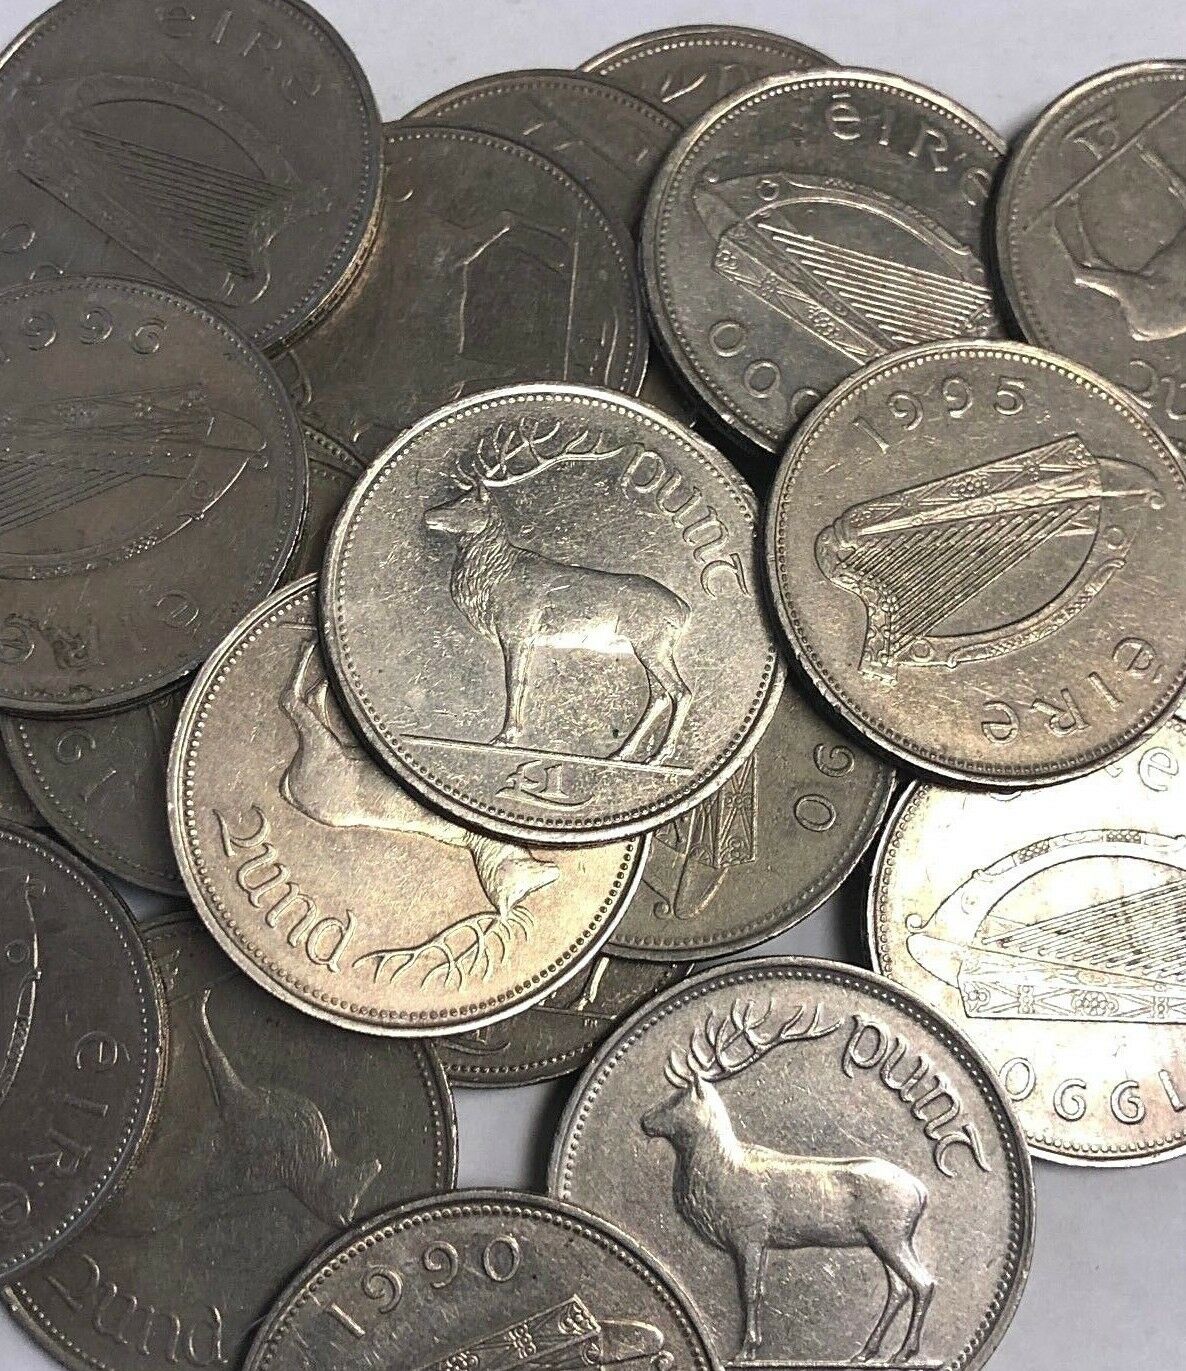 Irish Pound £1 Punt Red Deer (1990-2000 Type) Ireland "eire" Stag Coins